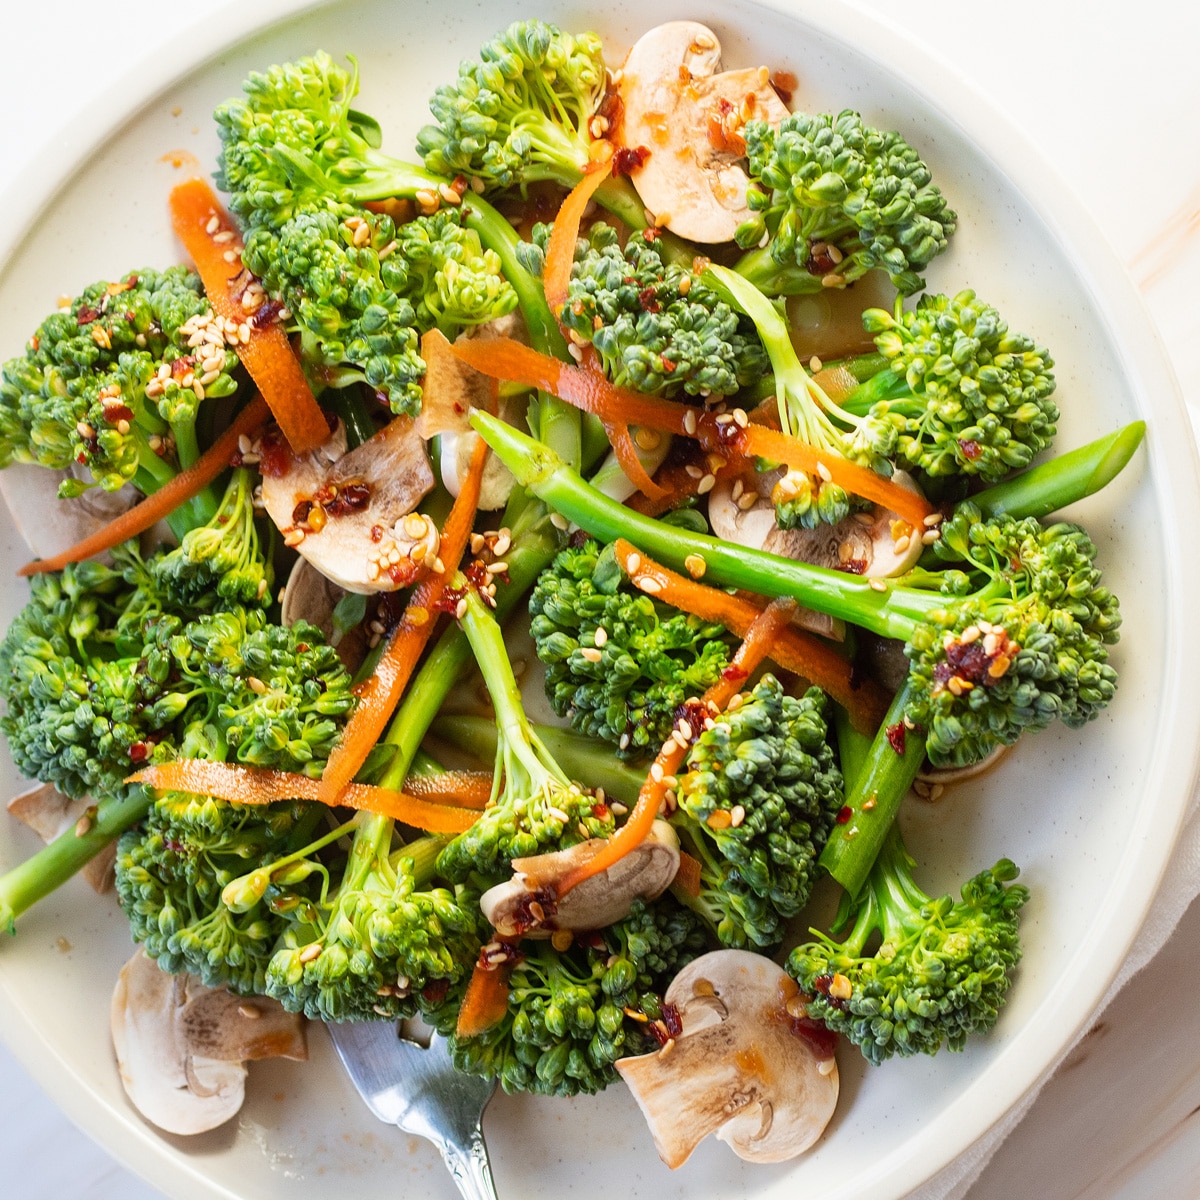 Ensalada de broccolini en plato blanco con champiñones, zanahorias ralladas y aderezo asiático ligero.